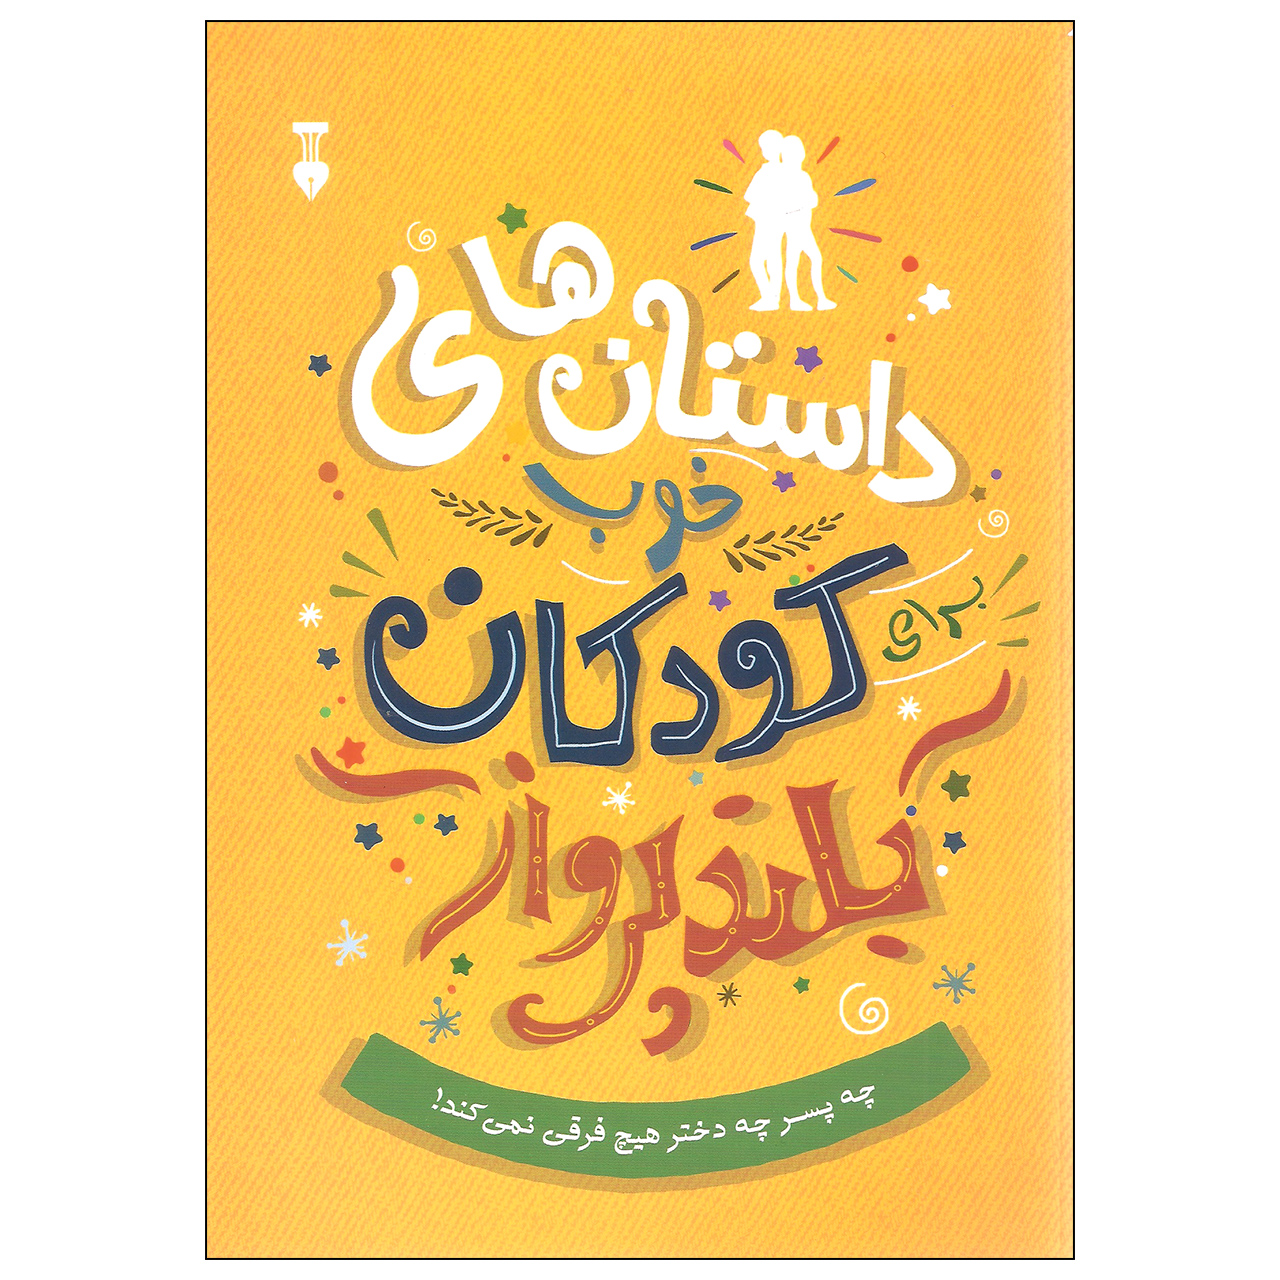 آنباکس کتاب داستان های خوب کودکان بلند پرواز اثر بن بروکس نشر نو توسط هلیا رضایی در تاریخ ۲۵ بهمن ۱۳۹۹